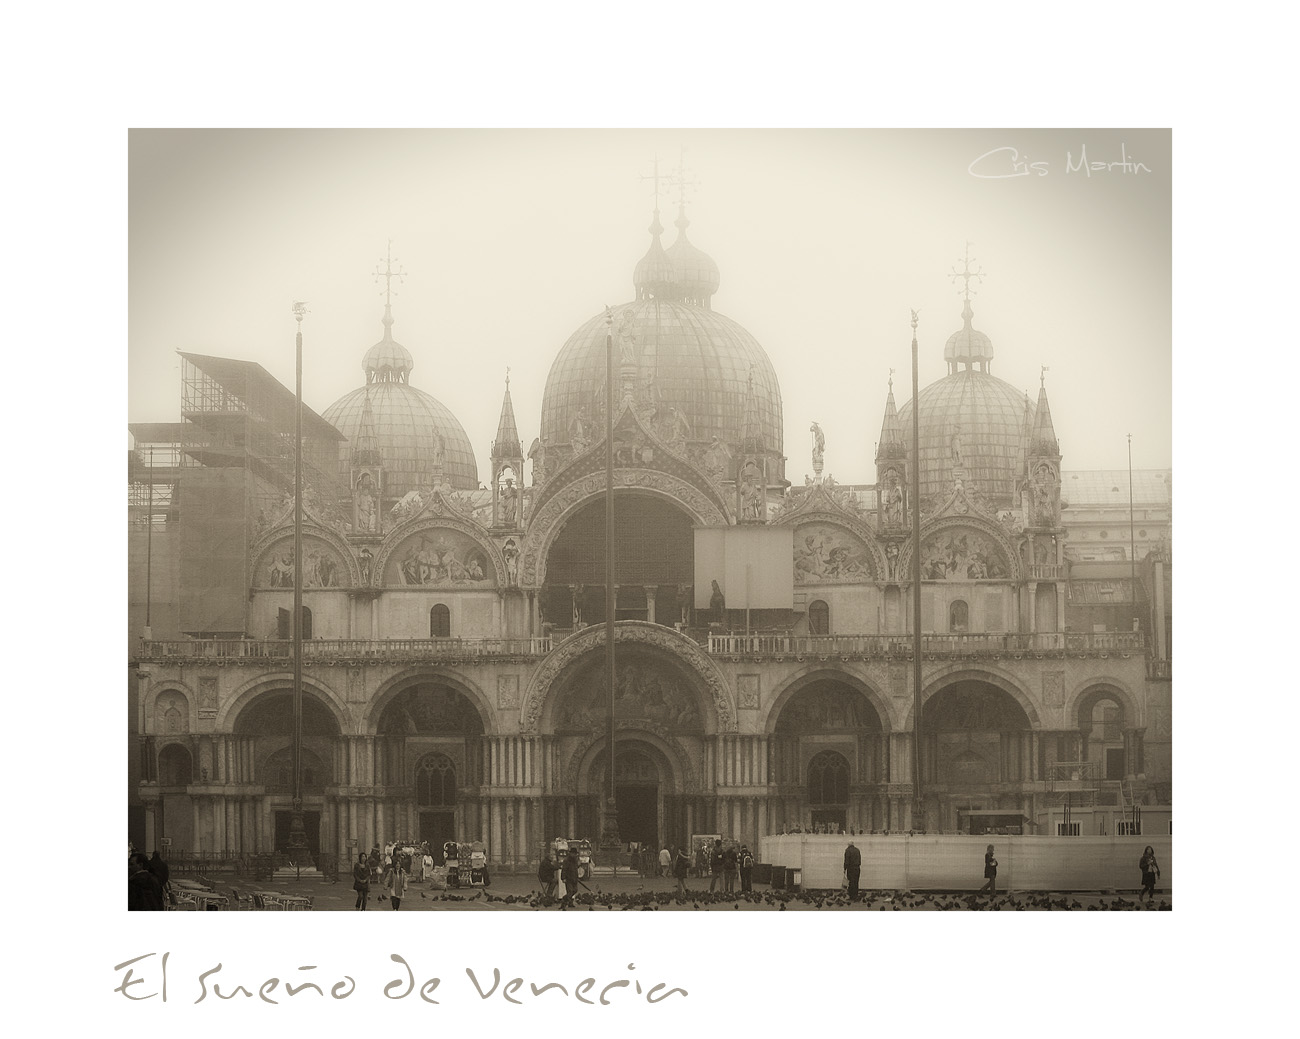 El sueño de Venezia